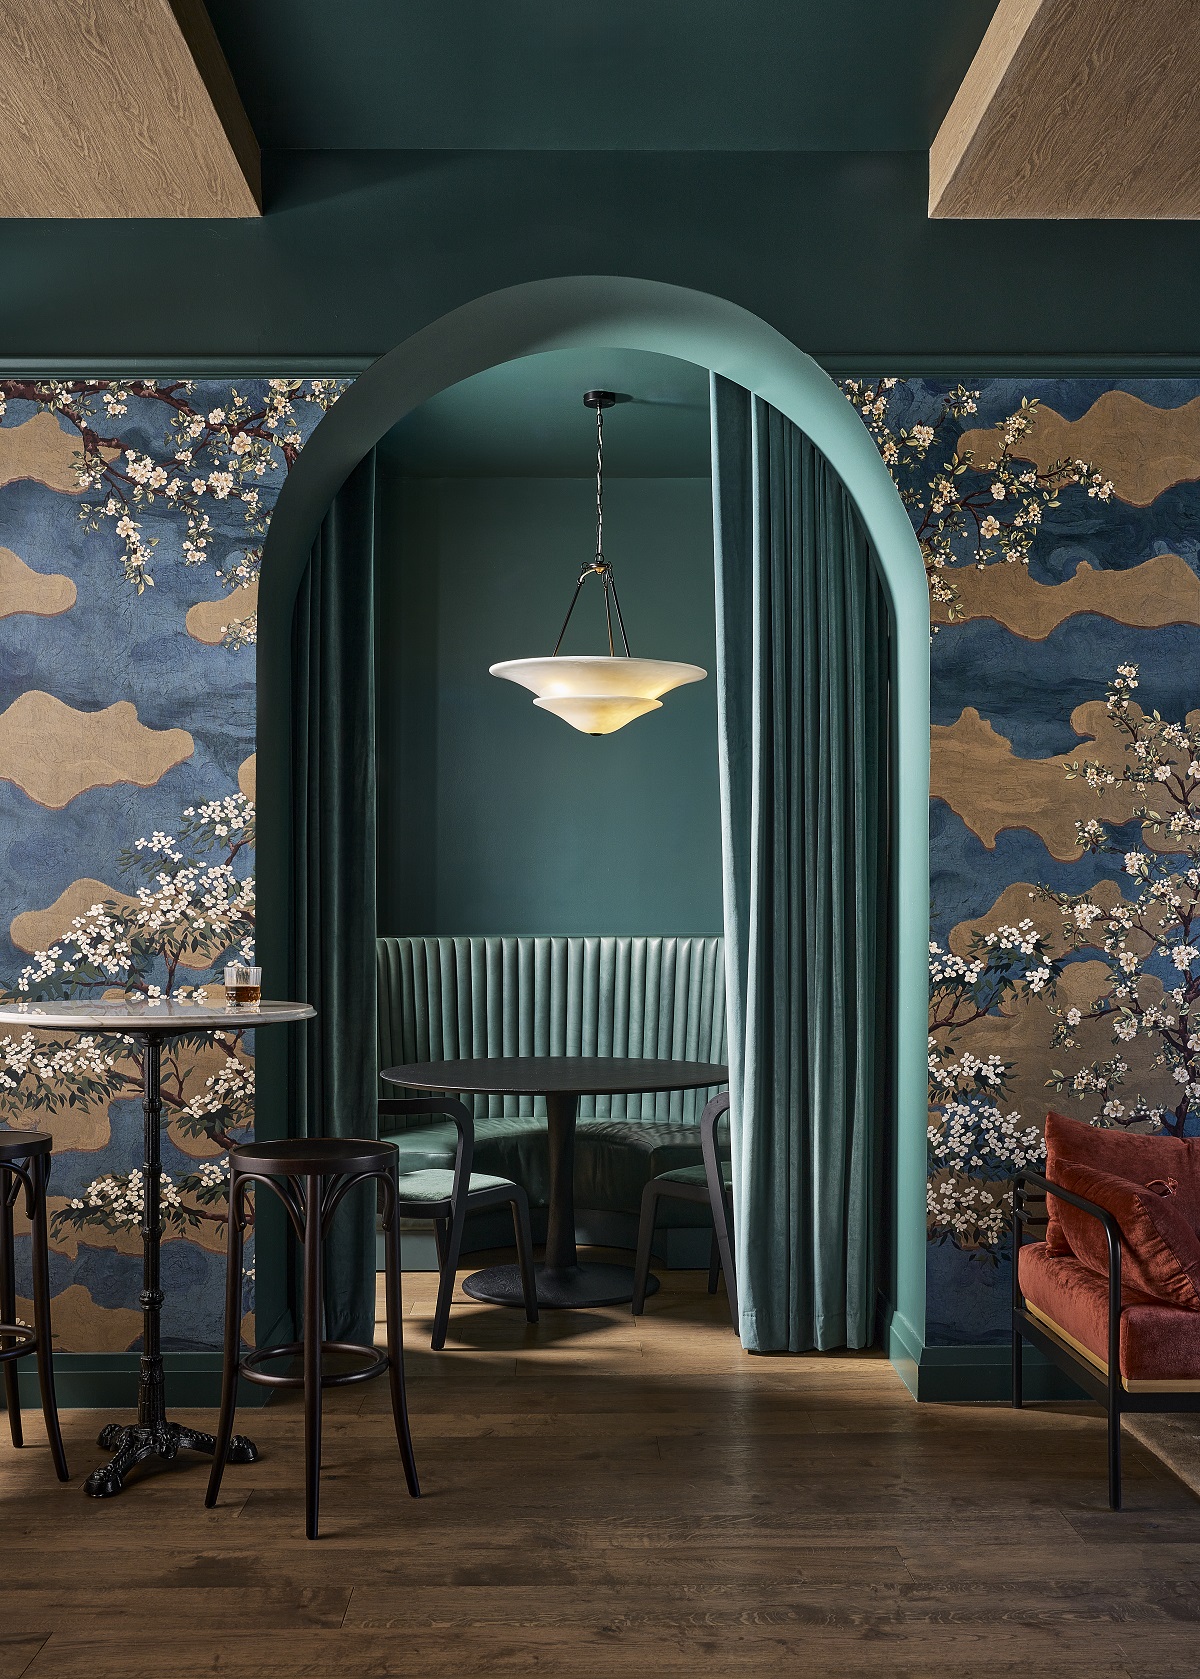 patterned blue wallpaper and arched blue entrance at Hotel Vesper